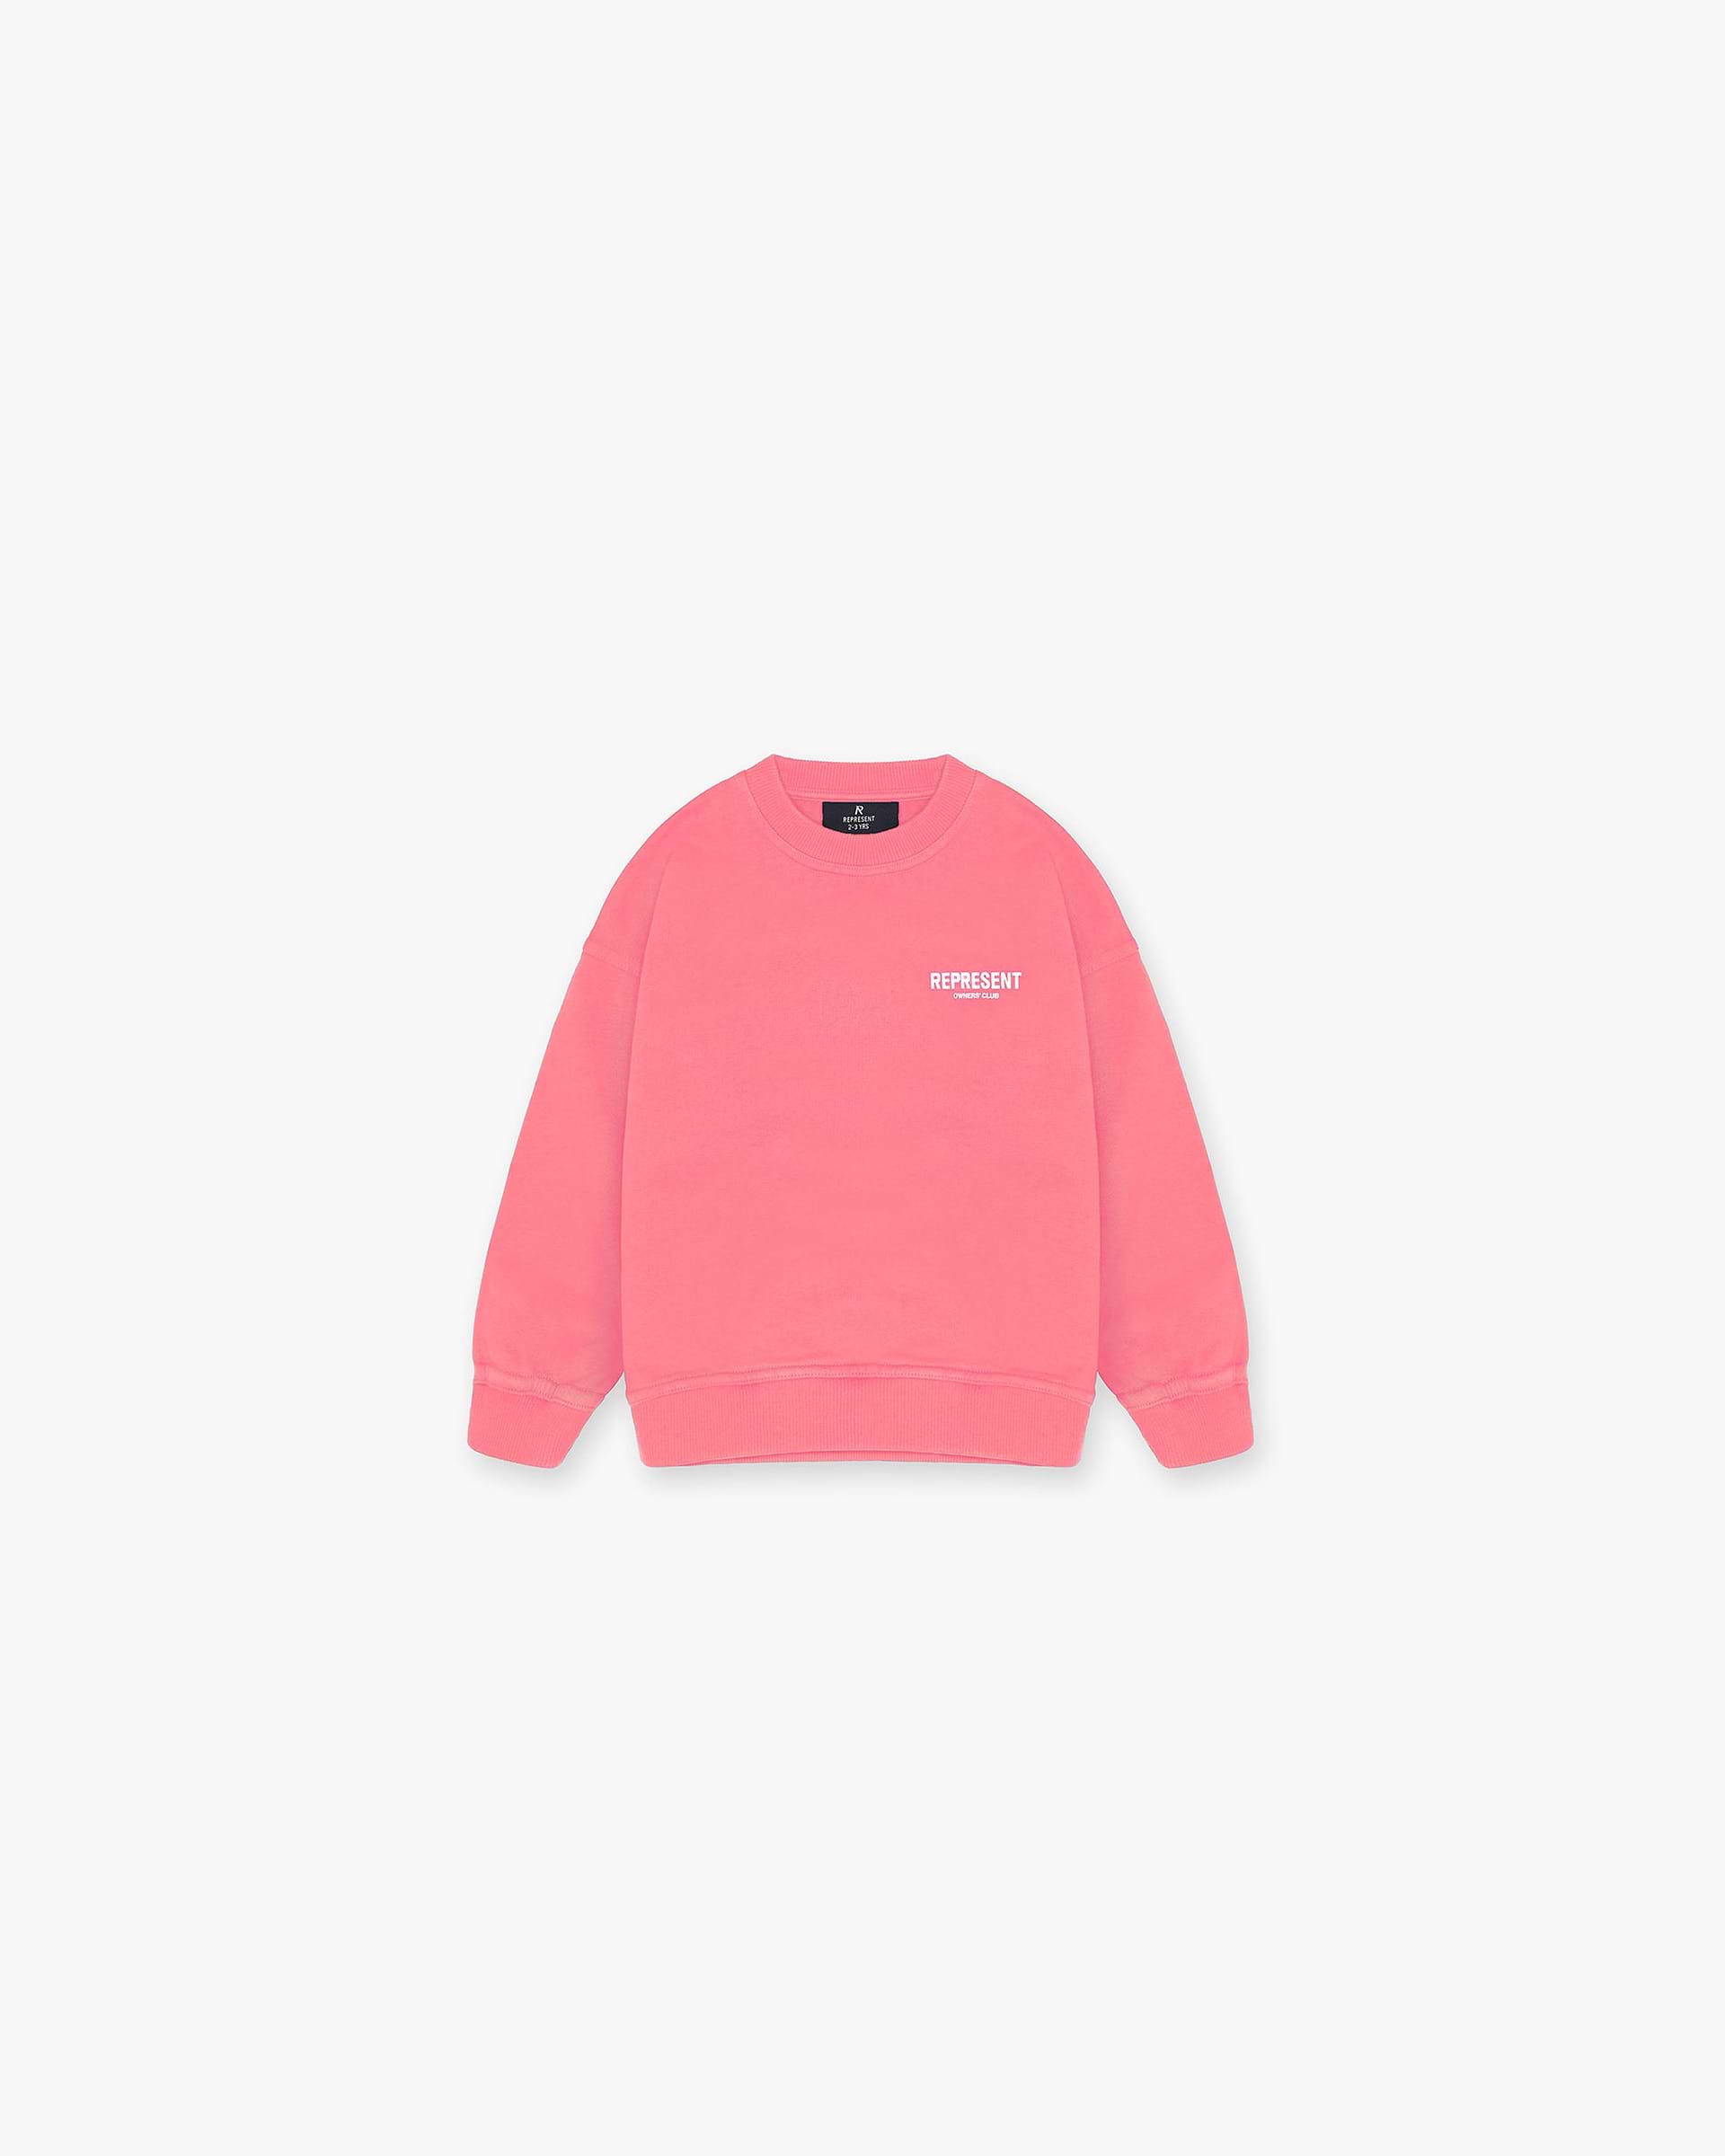 Represent Mini Owners Club Sweater | Bubblegum Pink Sweaters Owners Club | Represent Clo